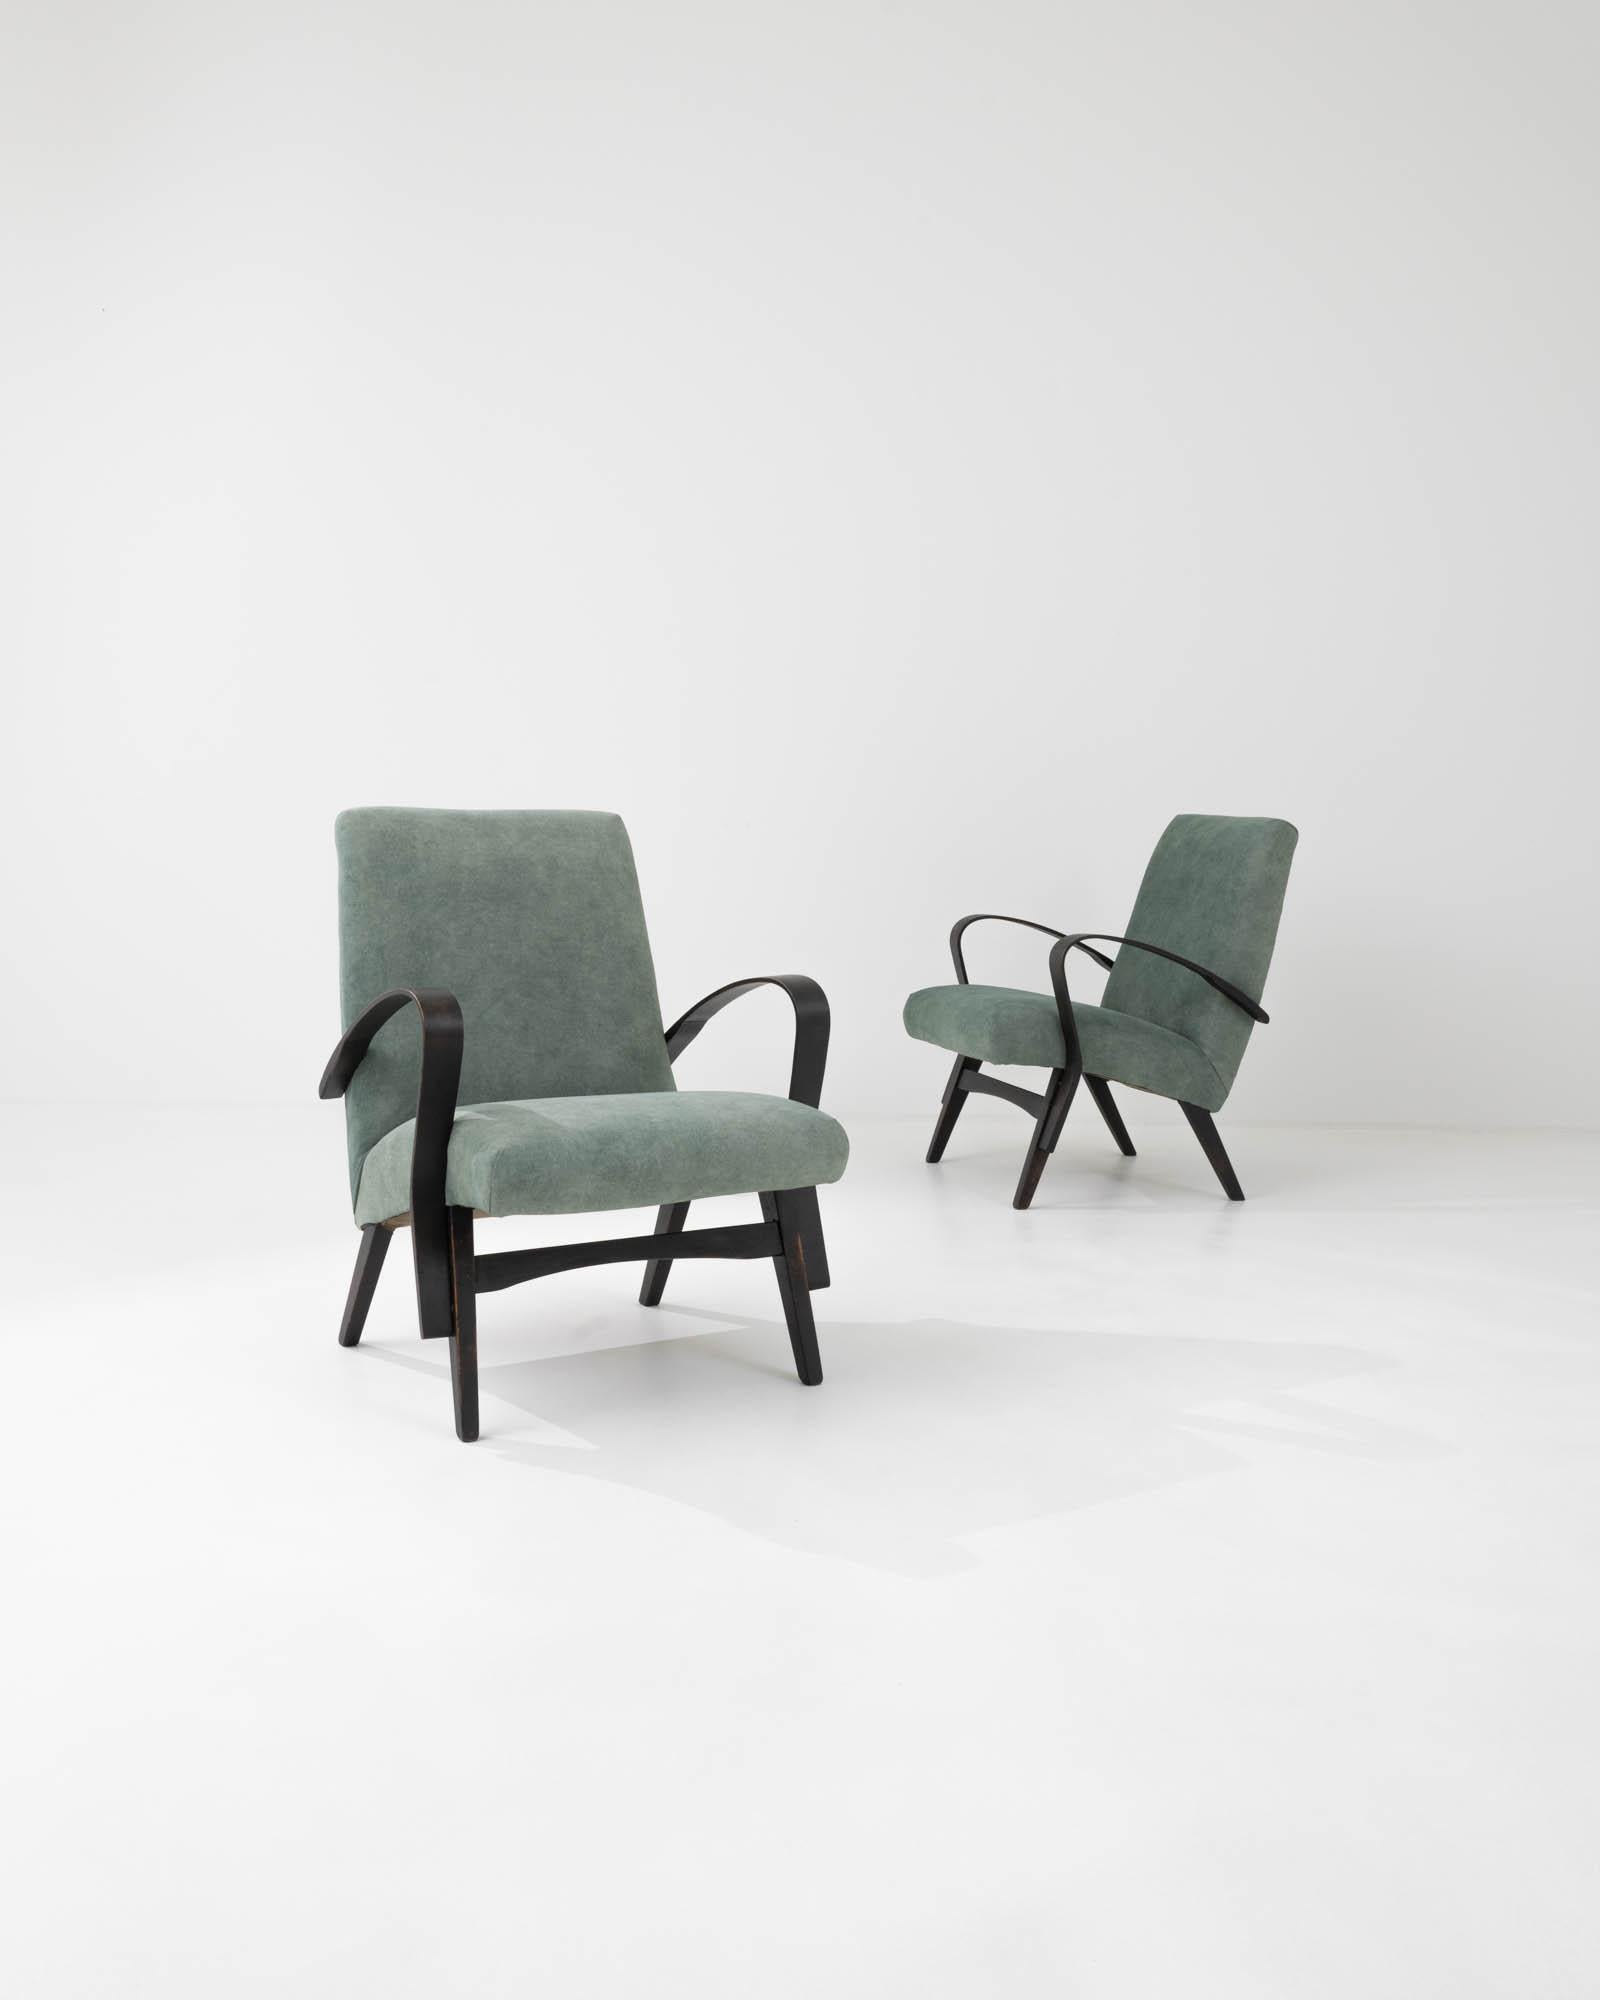 Paire de fauteuils rembourrés du fabricant de meubles tchèque Tatra. Caractérisés par les lignes épurées qui définissent leur silhouette minimaliste, ces fauteuils ont été fabriqués par l'emblématique marque tchèque Tatra, et attribués au designer